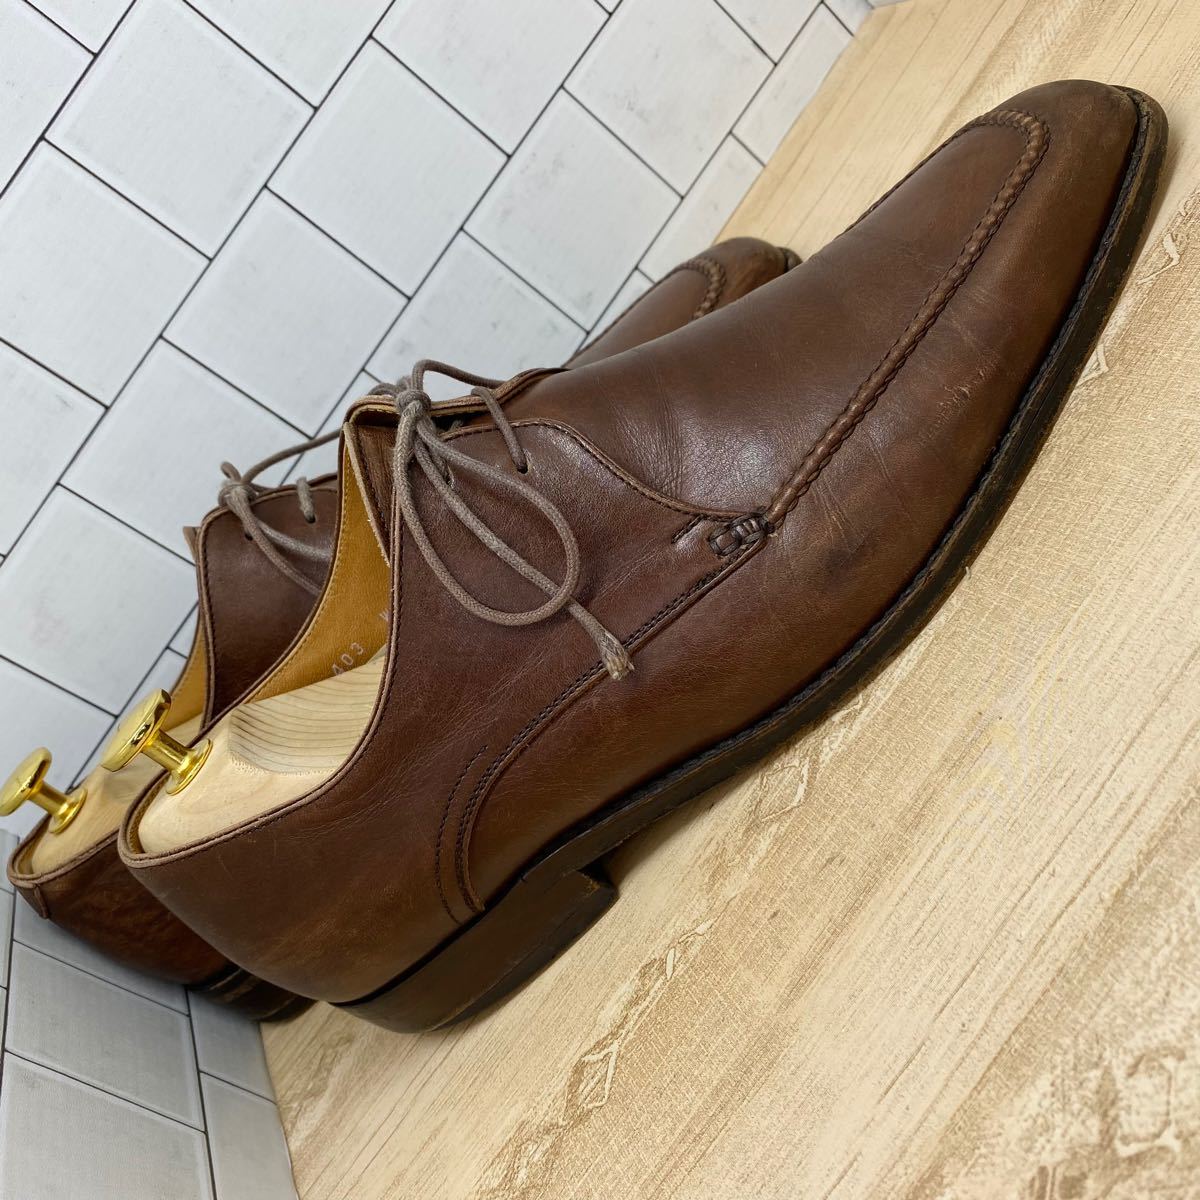 REGALリーガルメンズ革靴25.0cm uチップビジネスシューズ本革ブラウン茶色